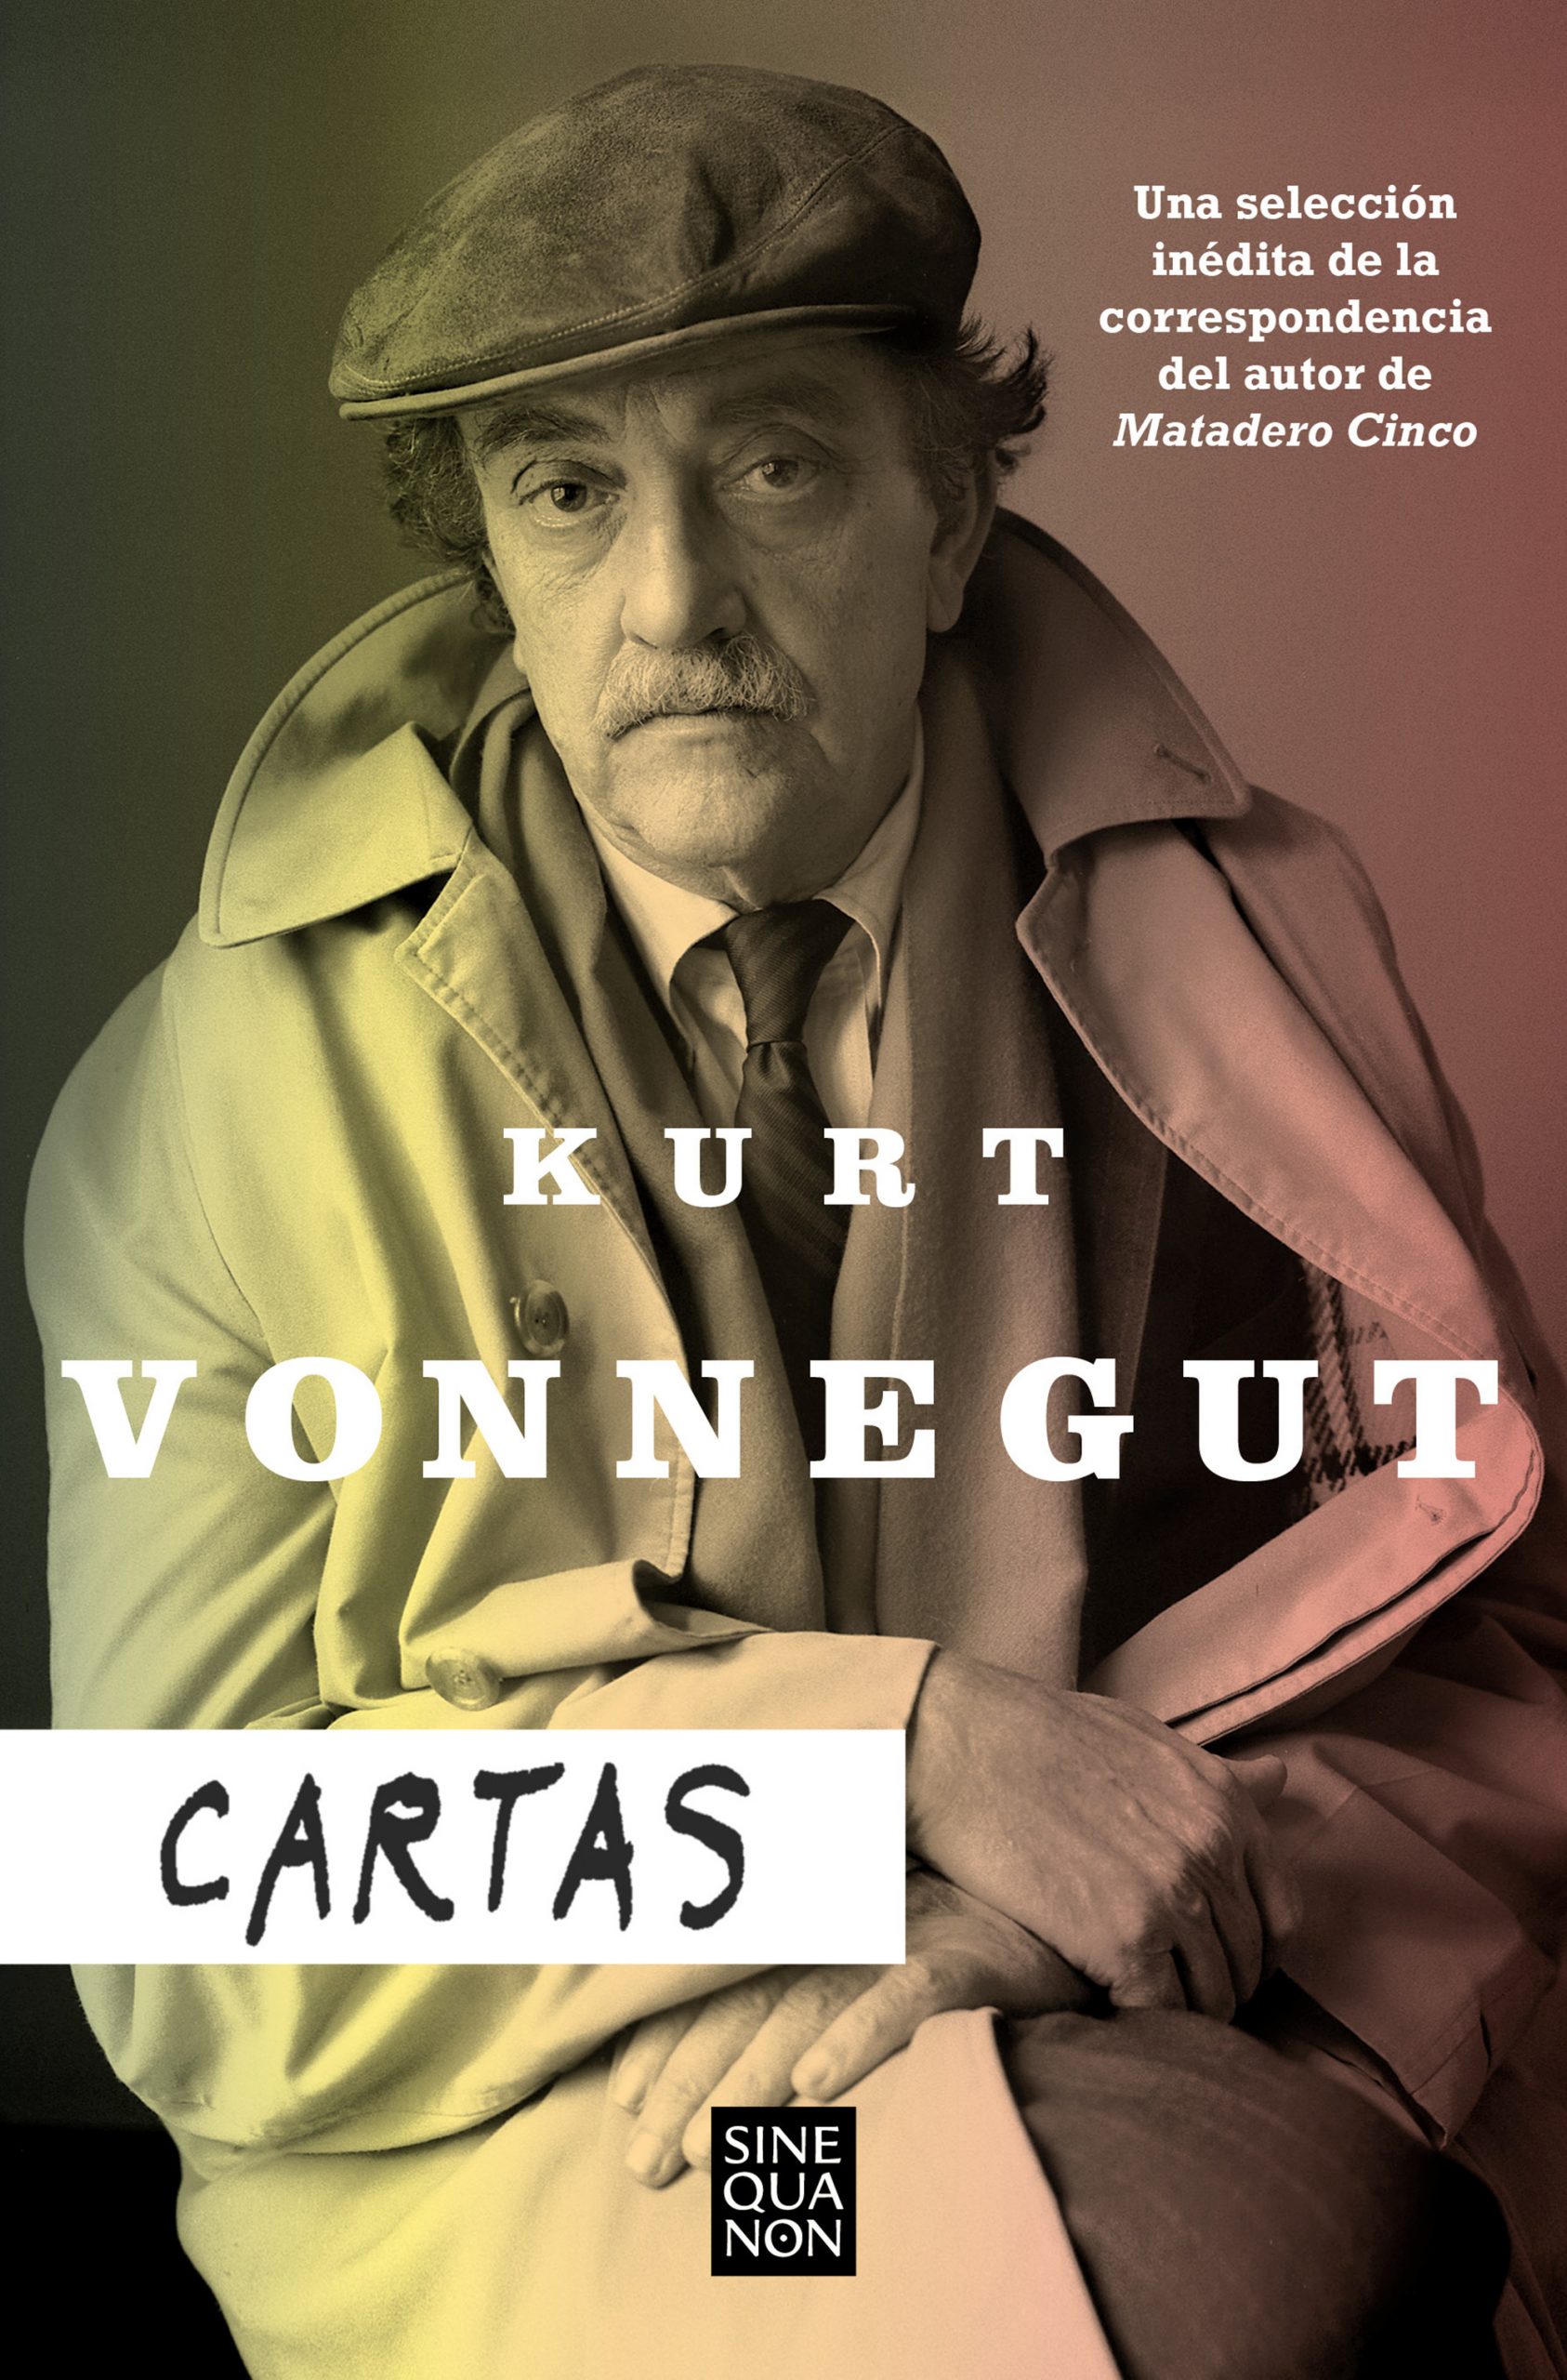 Publican por primera vez en castellano las cartas del escritor Kurt Vonnegut